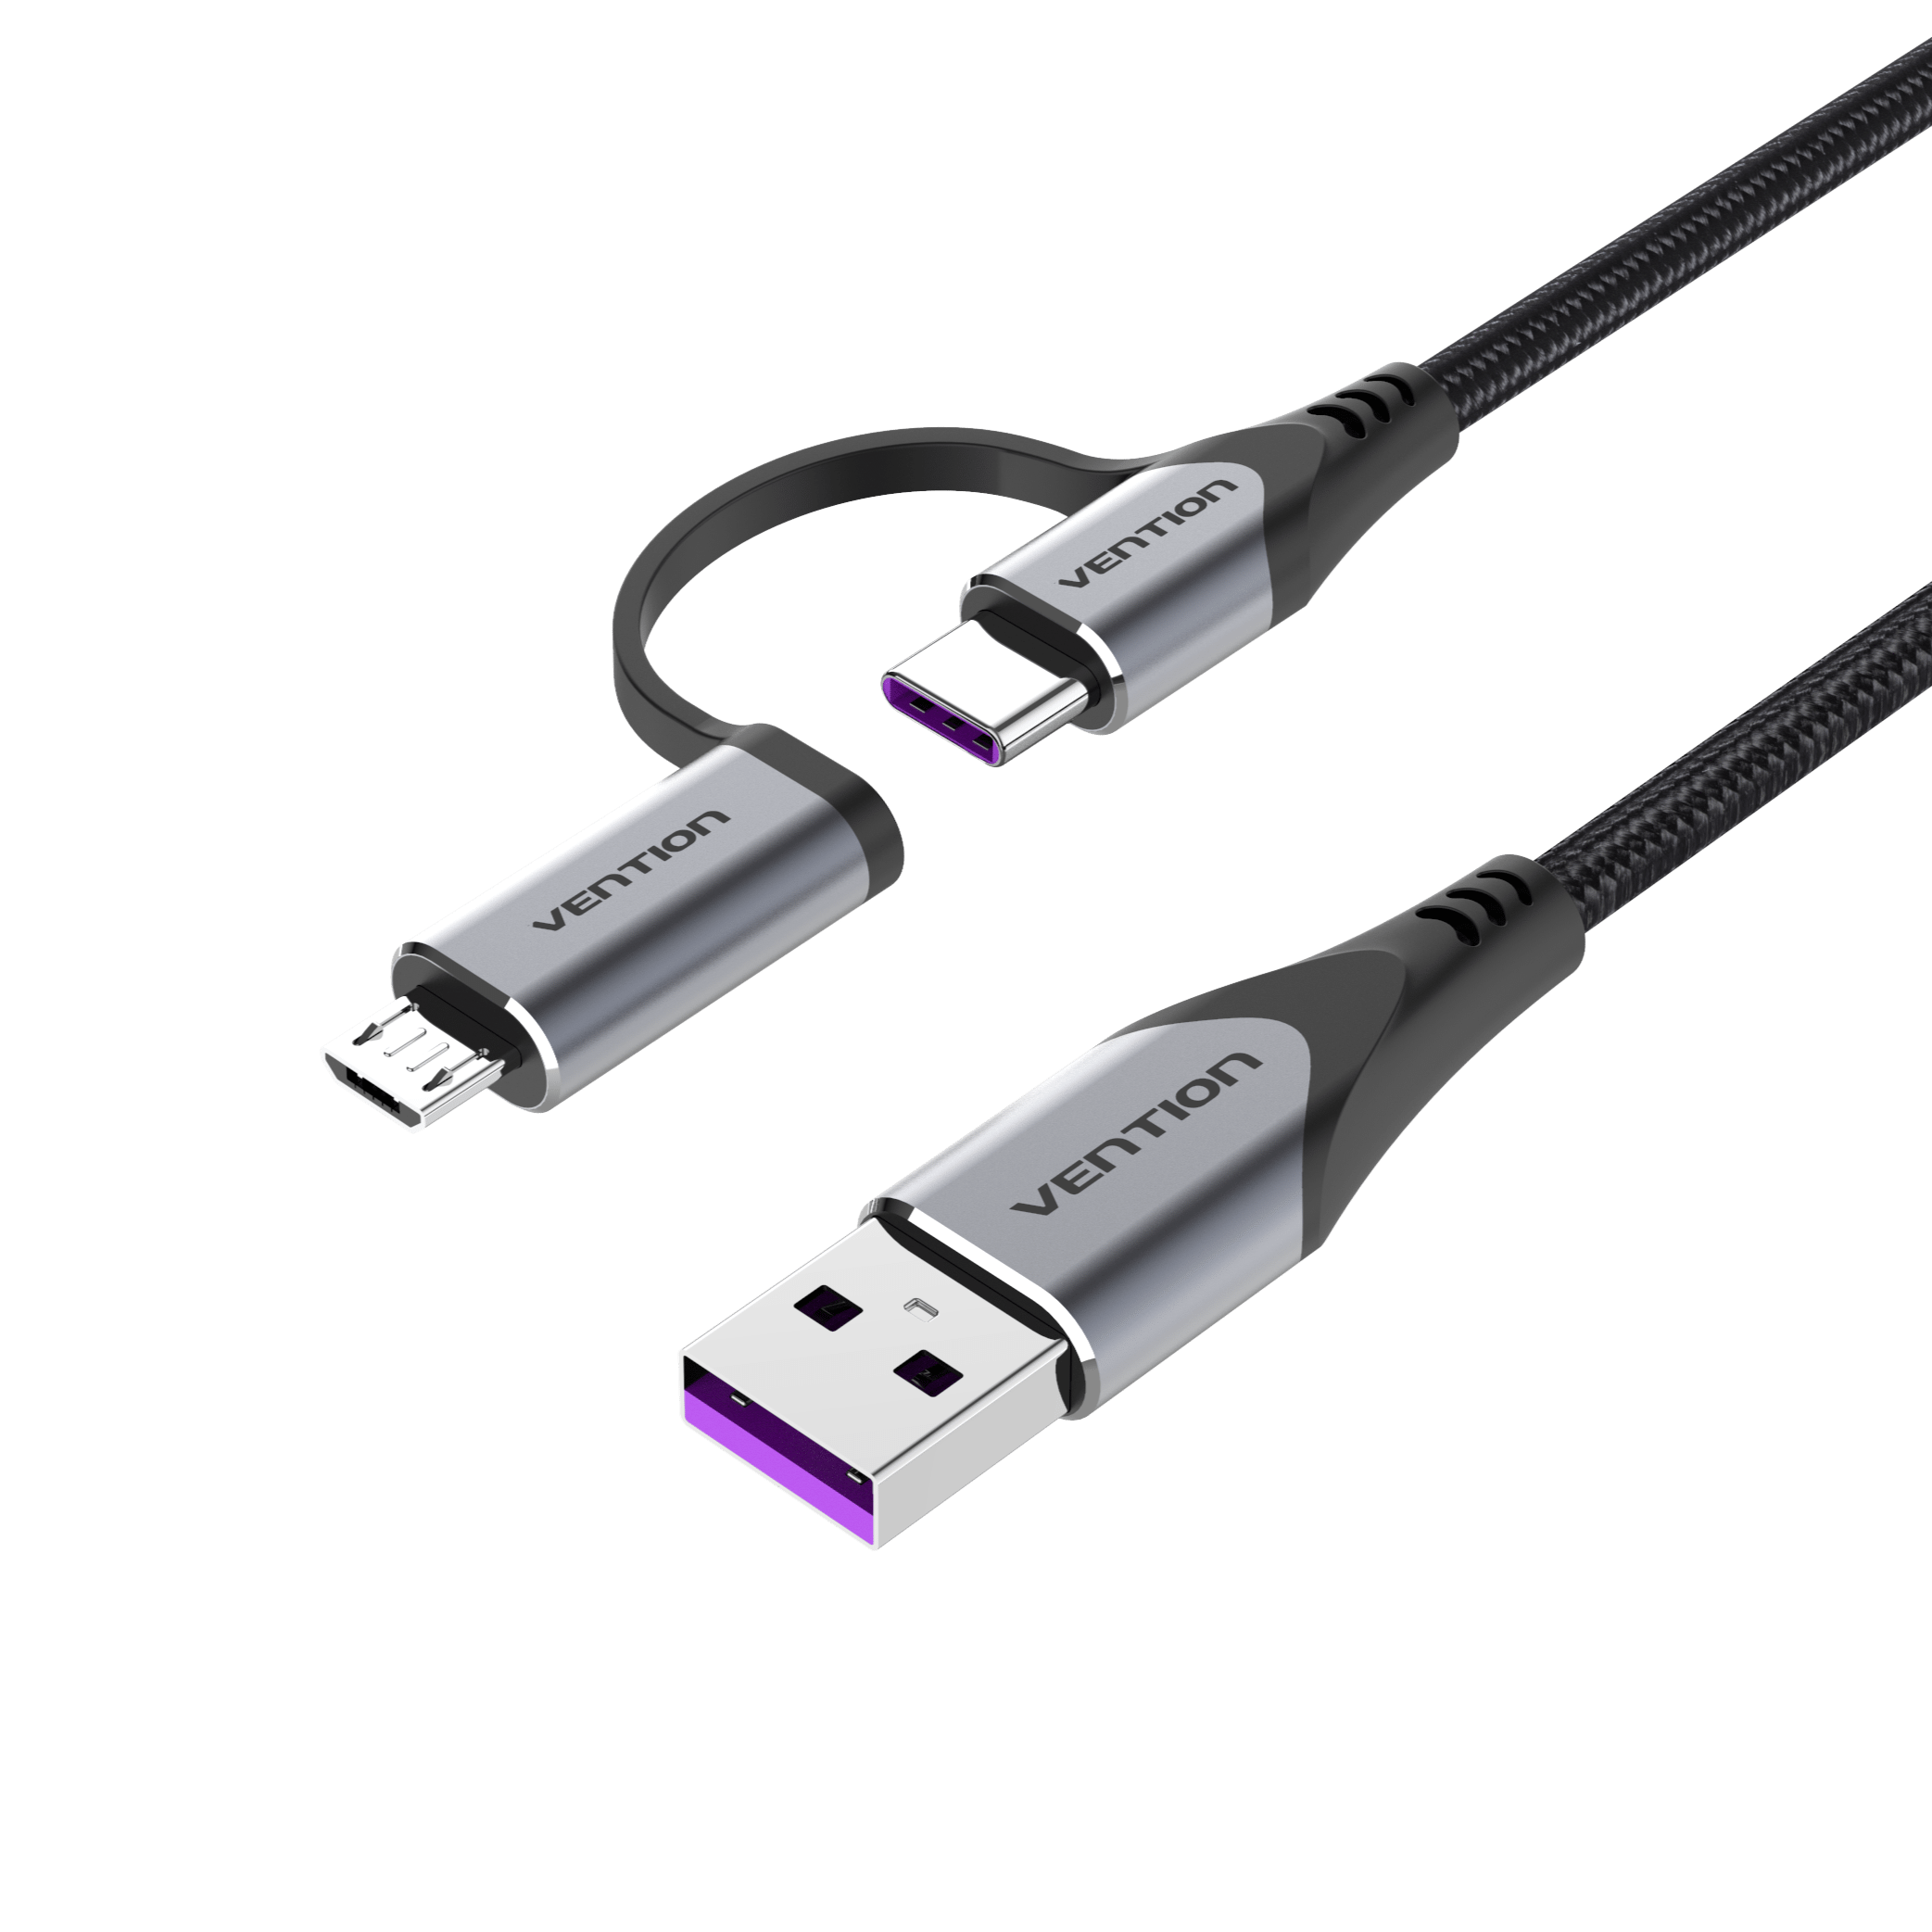 Câble USB Type C 5A pour Huawei P40 Pro Mate 30 P30 Pro Supercharge 40